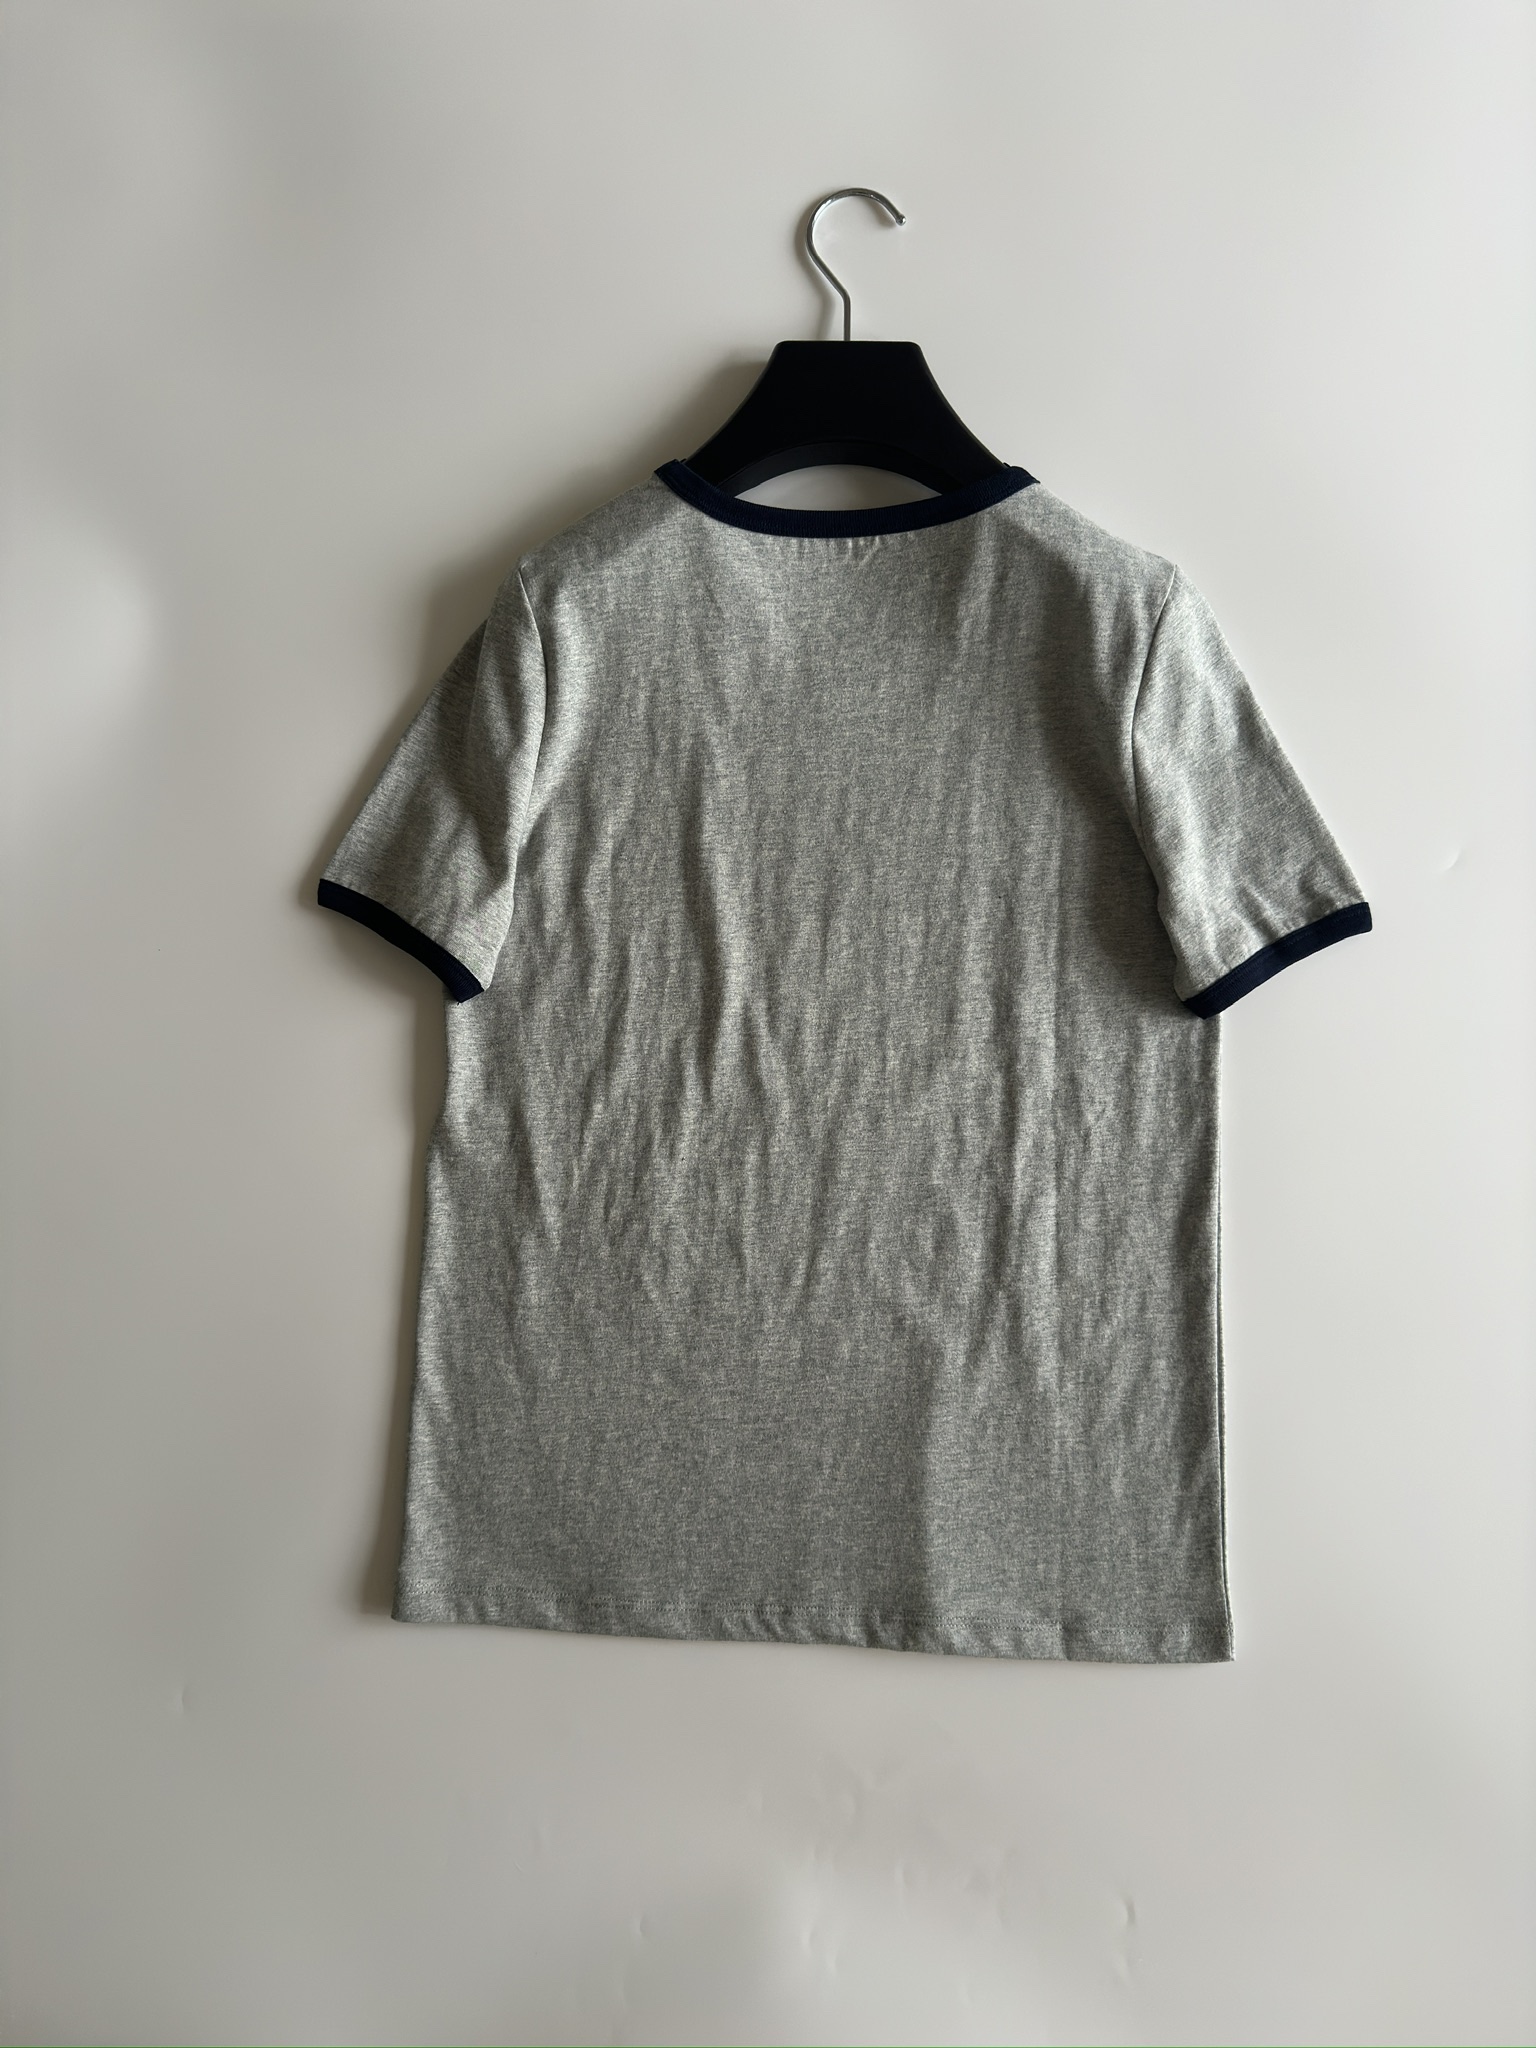 着心地が良い celine ロン tスーパーコピー トップス tシャツ 半袖 純綿 ファッション 人気品 グレイ_6